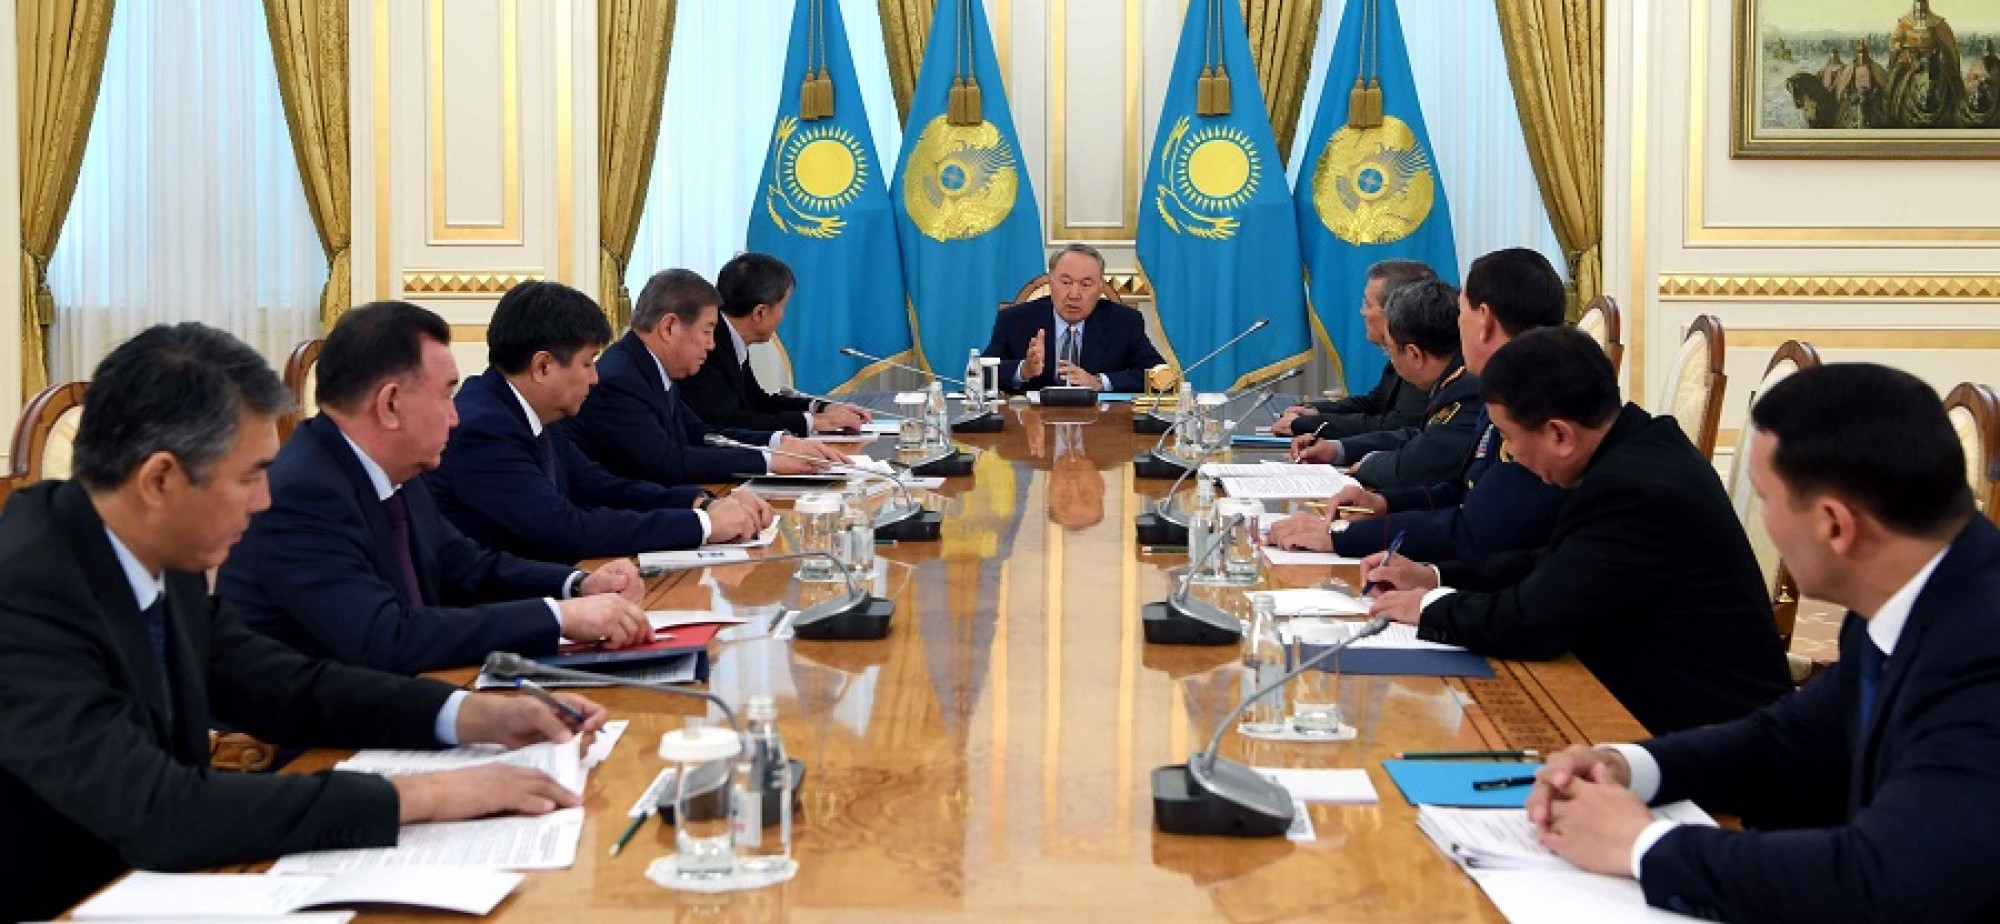 Нурсултан Назарбаев: «Ожидается приезд большого количества гостей в столицу Казахстана»